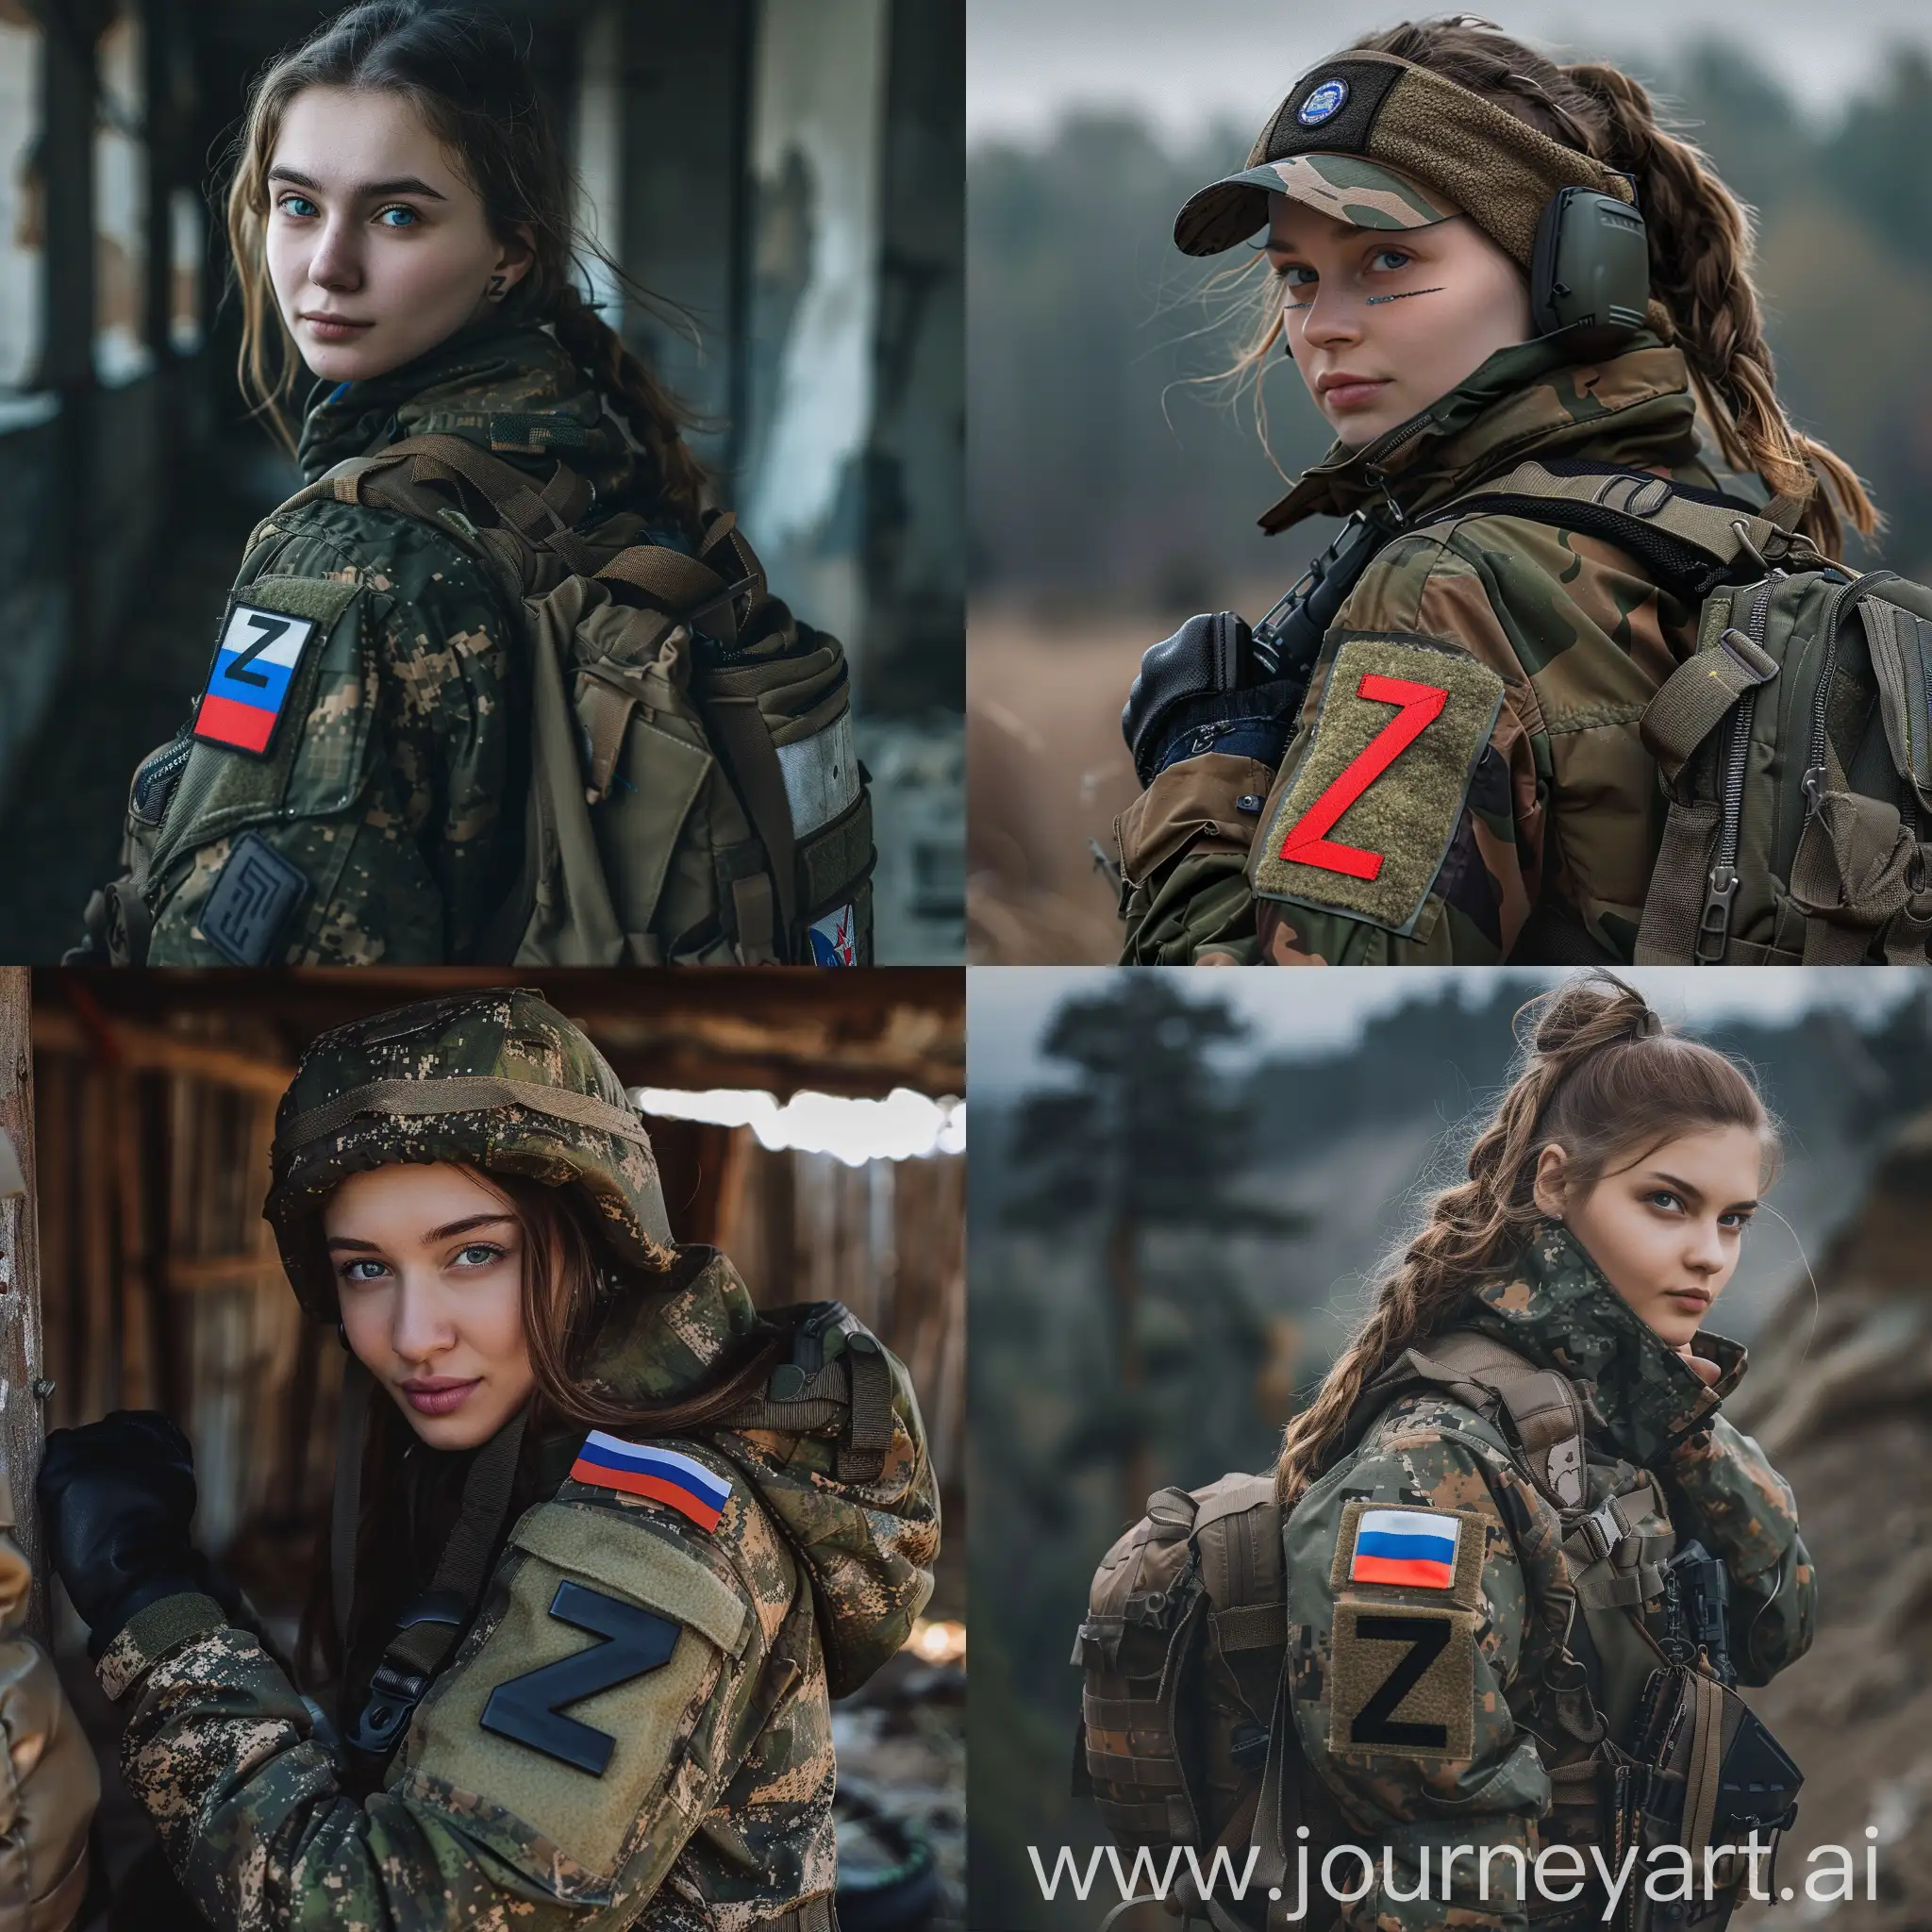 Русский солдат девушка на специальной военной операции, с буквой z на военной куртке и с российским флагом на плече